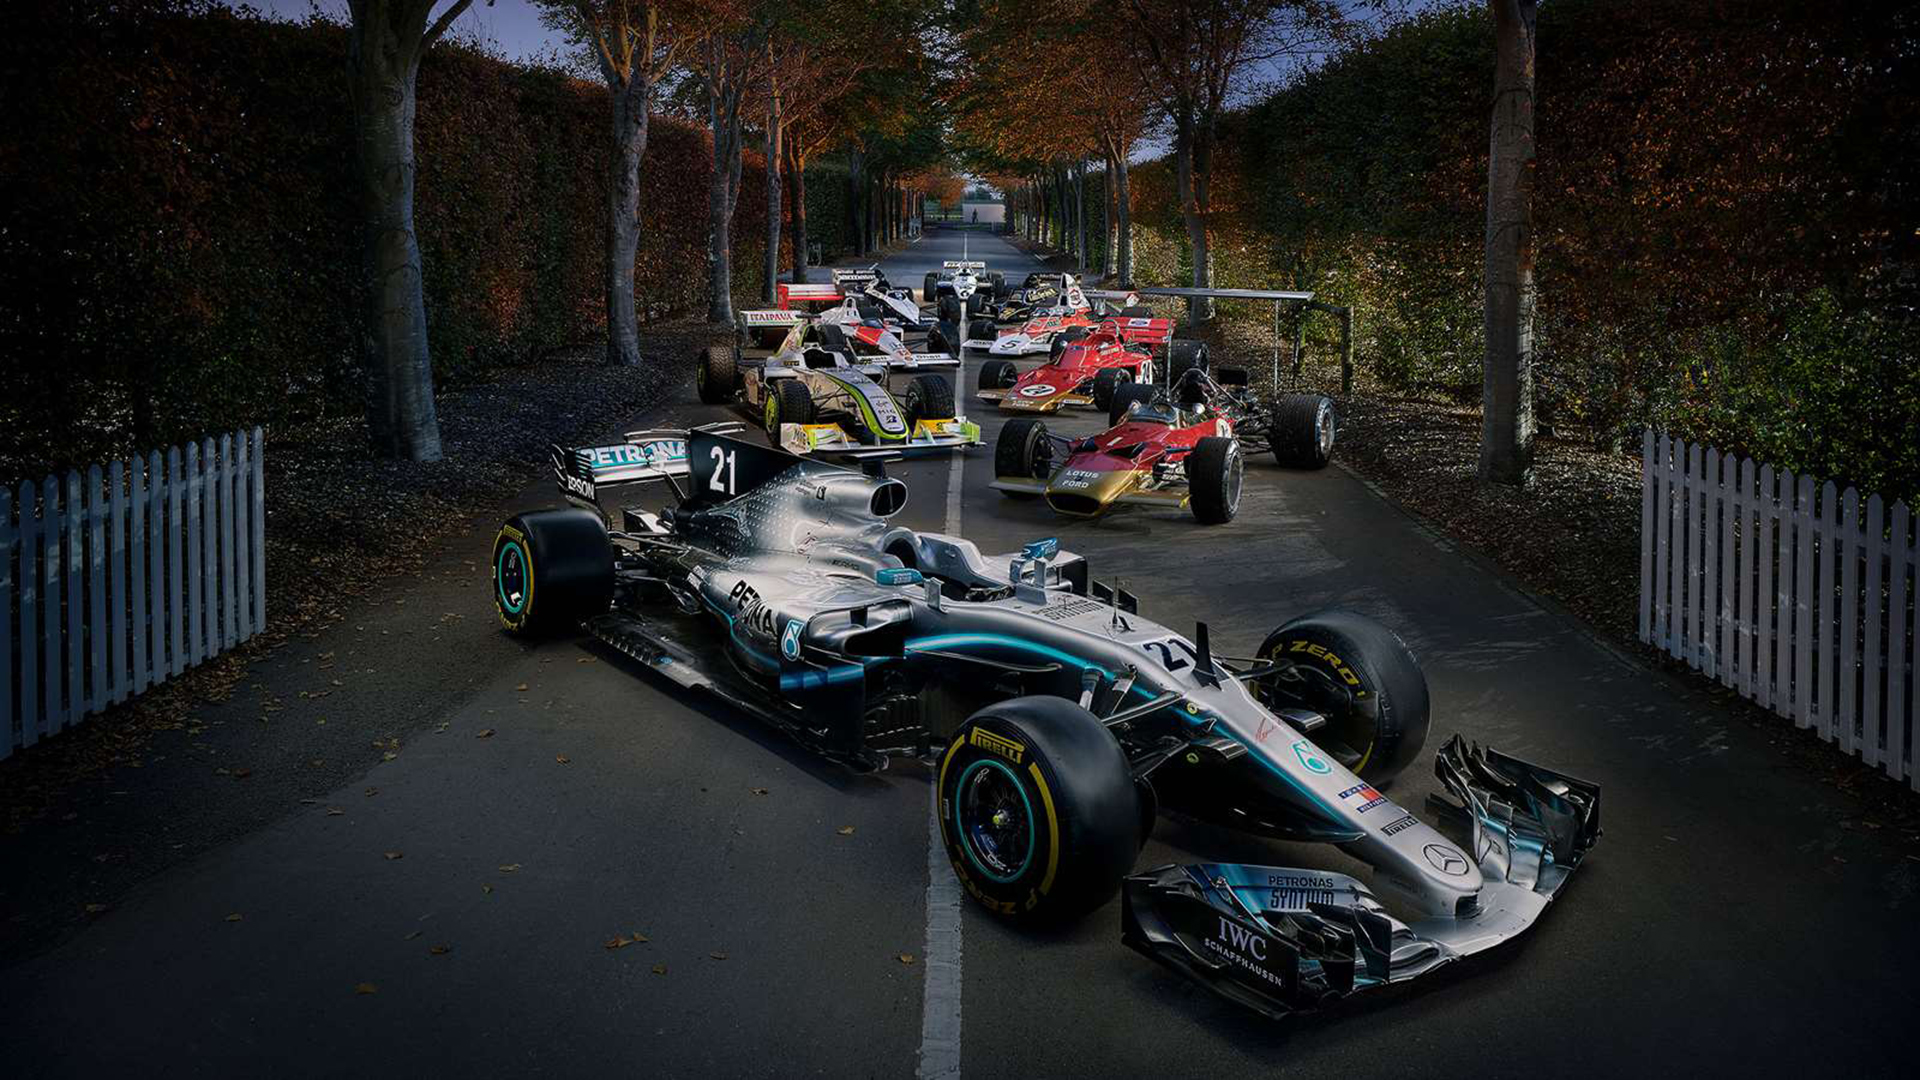 Máquinas de Fórmula 1 de todos los tiempos se distinguen en Goodwood. Se lucen en la foto un Mercedes, tres Lotus, un McLaren, un BrawnGP, un Brabham y un Williams al final (https://www.goodwood.com/)